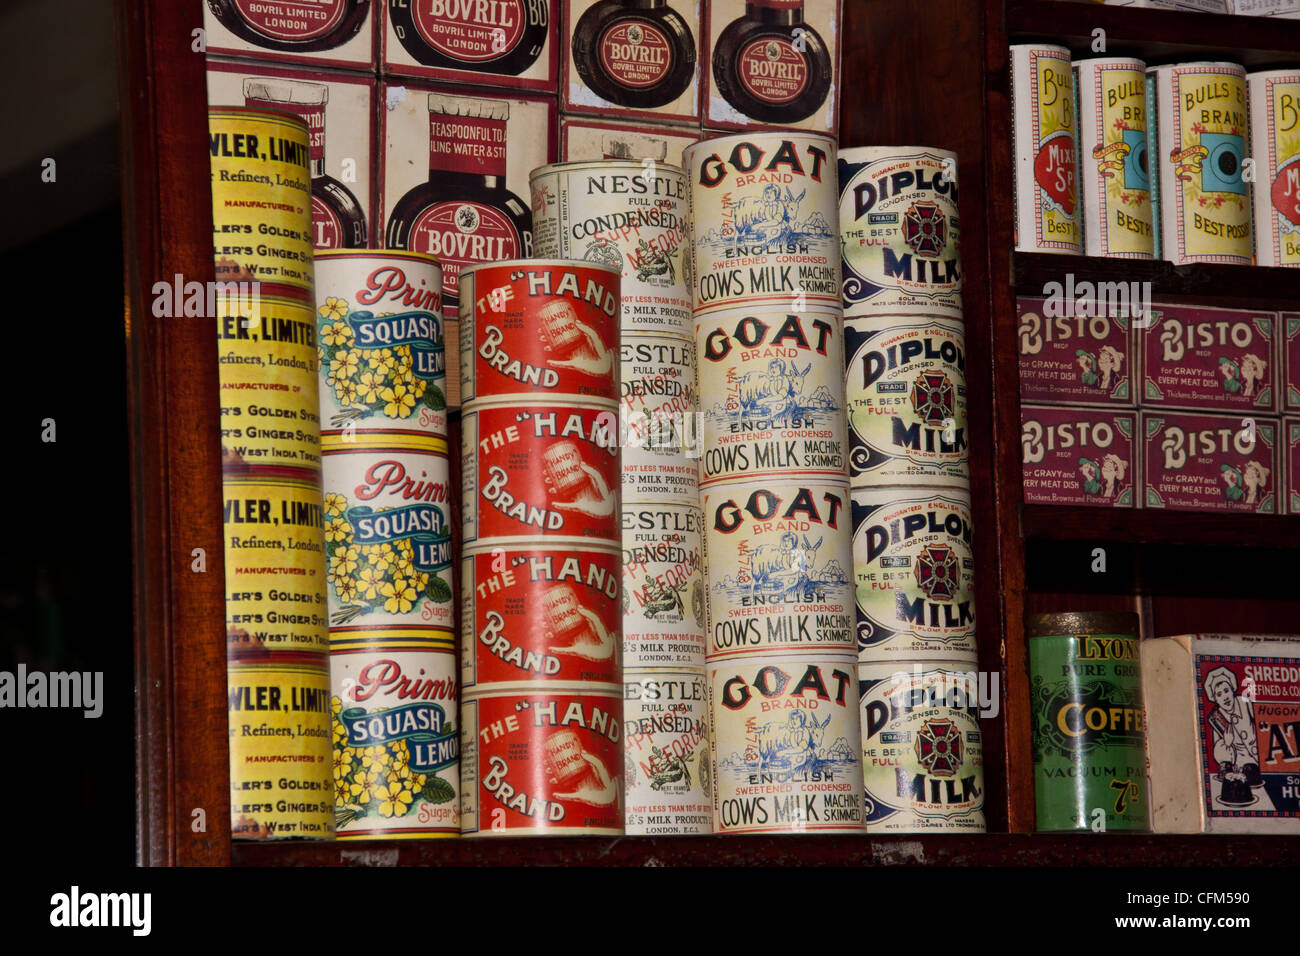 Konserven und Produkte aus einer vergangenen Ära, alt altmodisch Stil allgemeine Lebensmittelgeschäfte und -Versorgungsmaterial-Speicher aus den frühen 1930er Jahren. Stockfoto